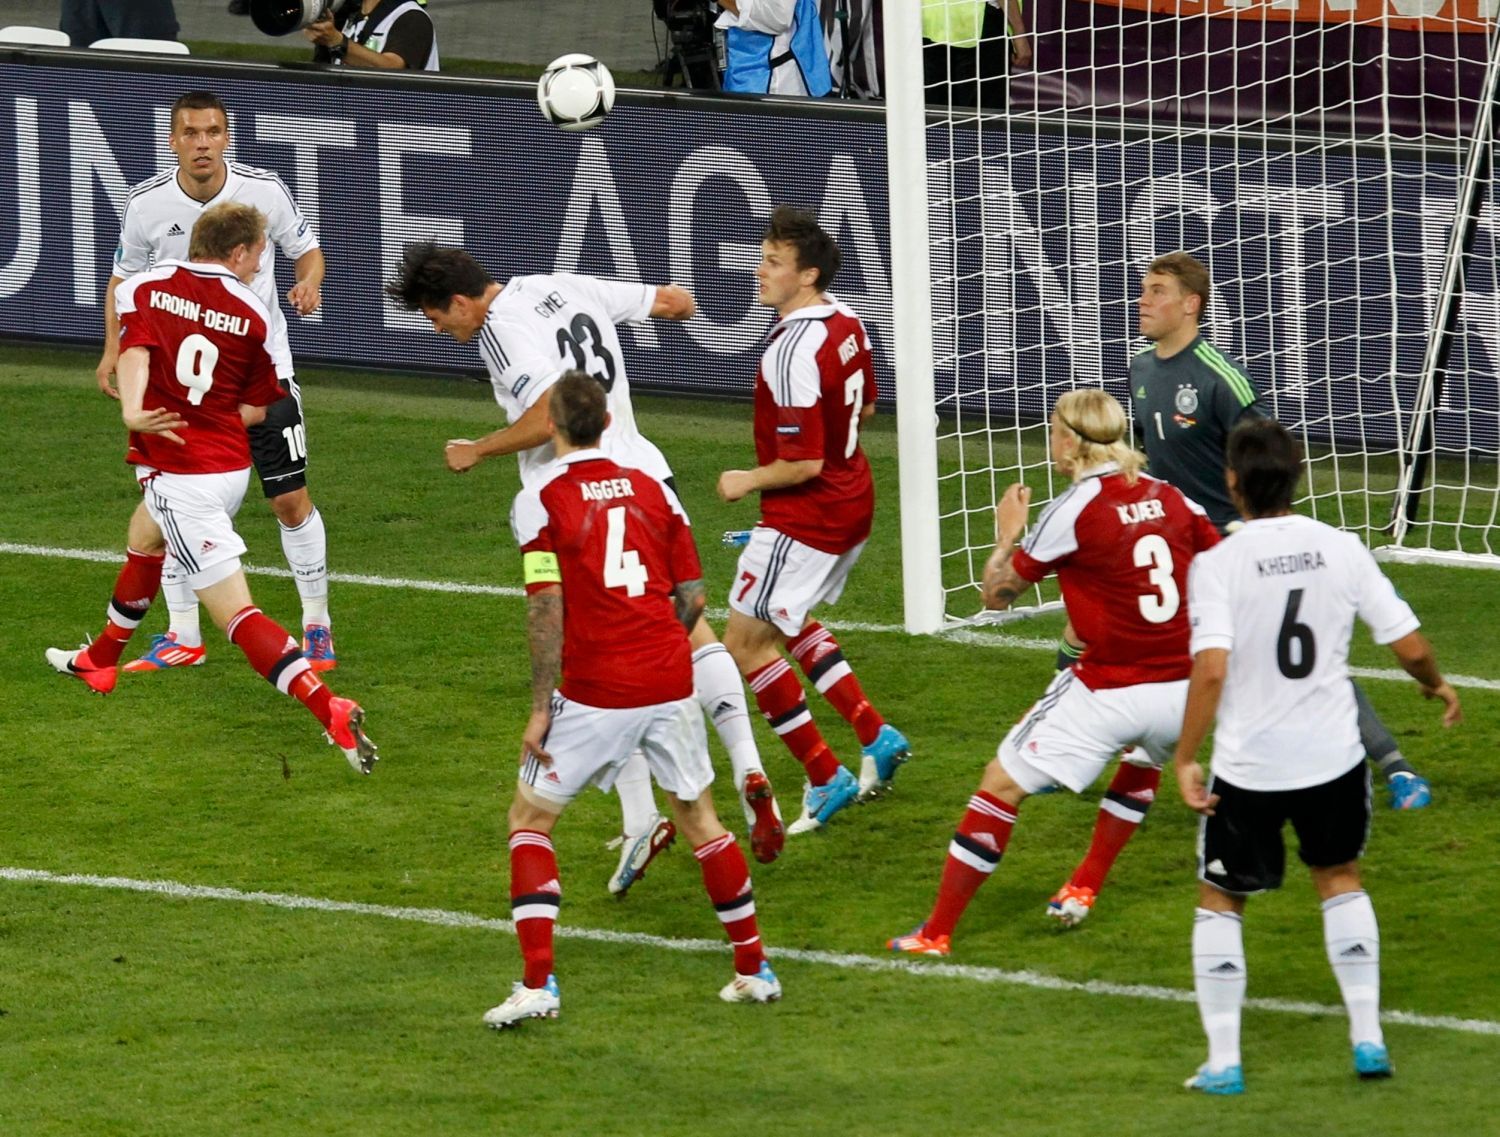 Dánský fotbalista Michael Krohn-Dehli hlavičkuje gól za záda německého brankáře Manuela Neuera v utkání skupiny B na Euru 2012